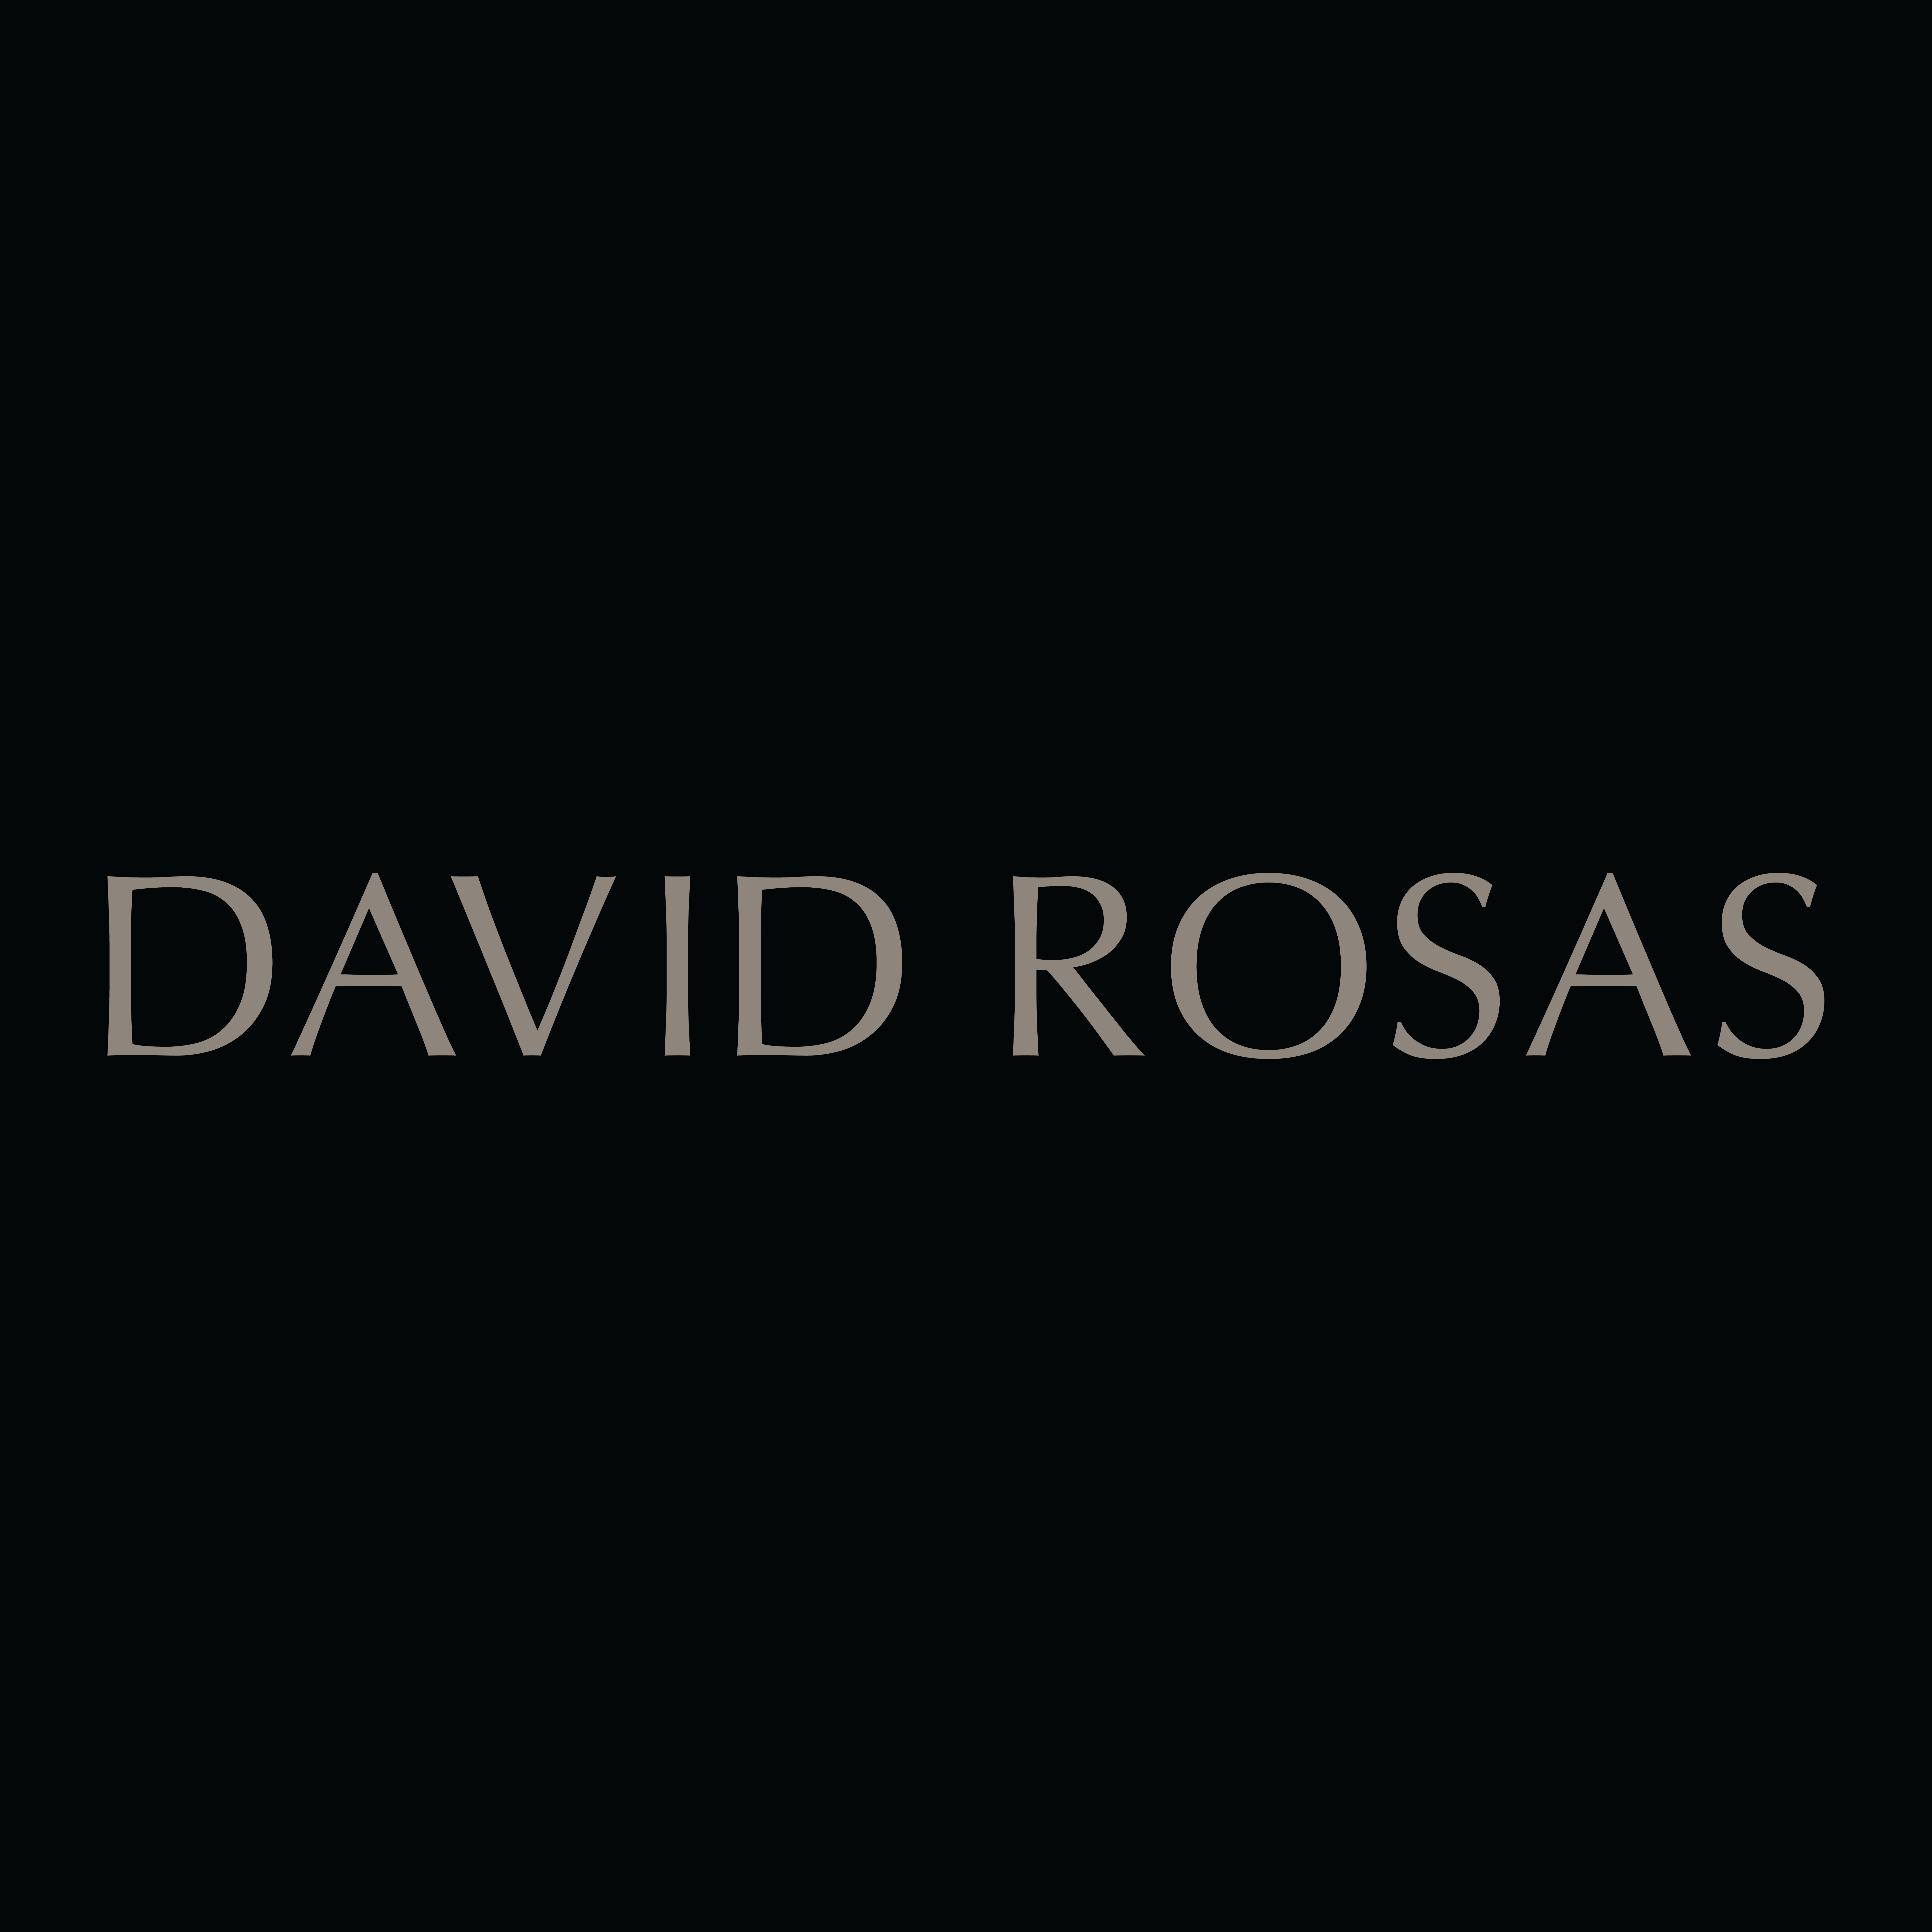 David Rosas - Official Rolex Retailer Logo